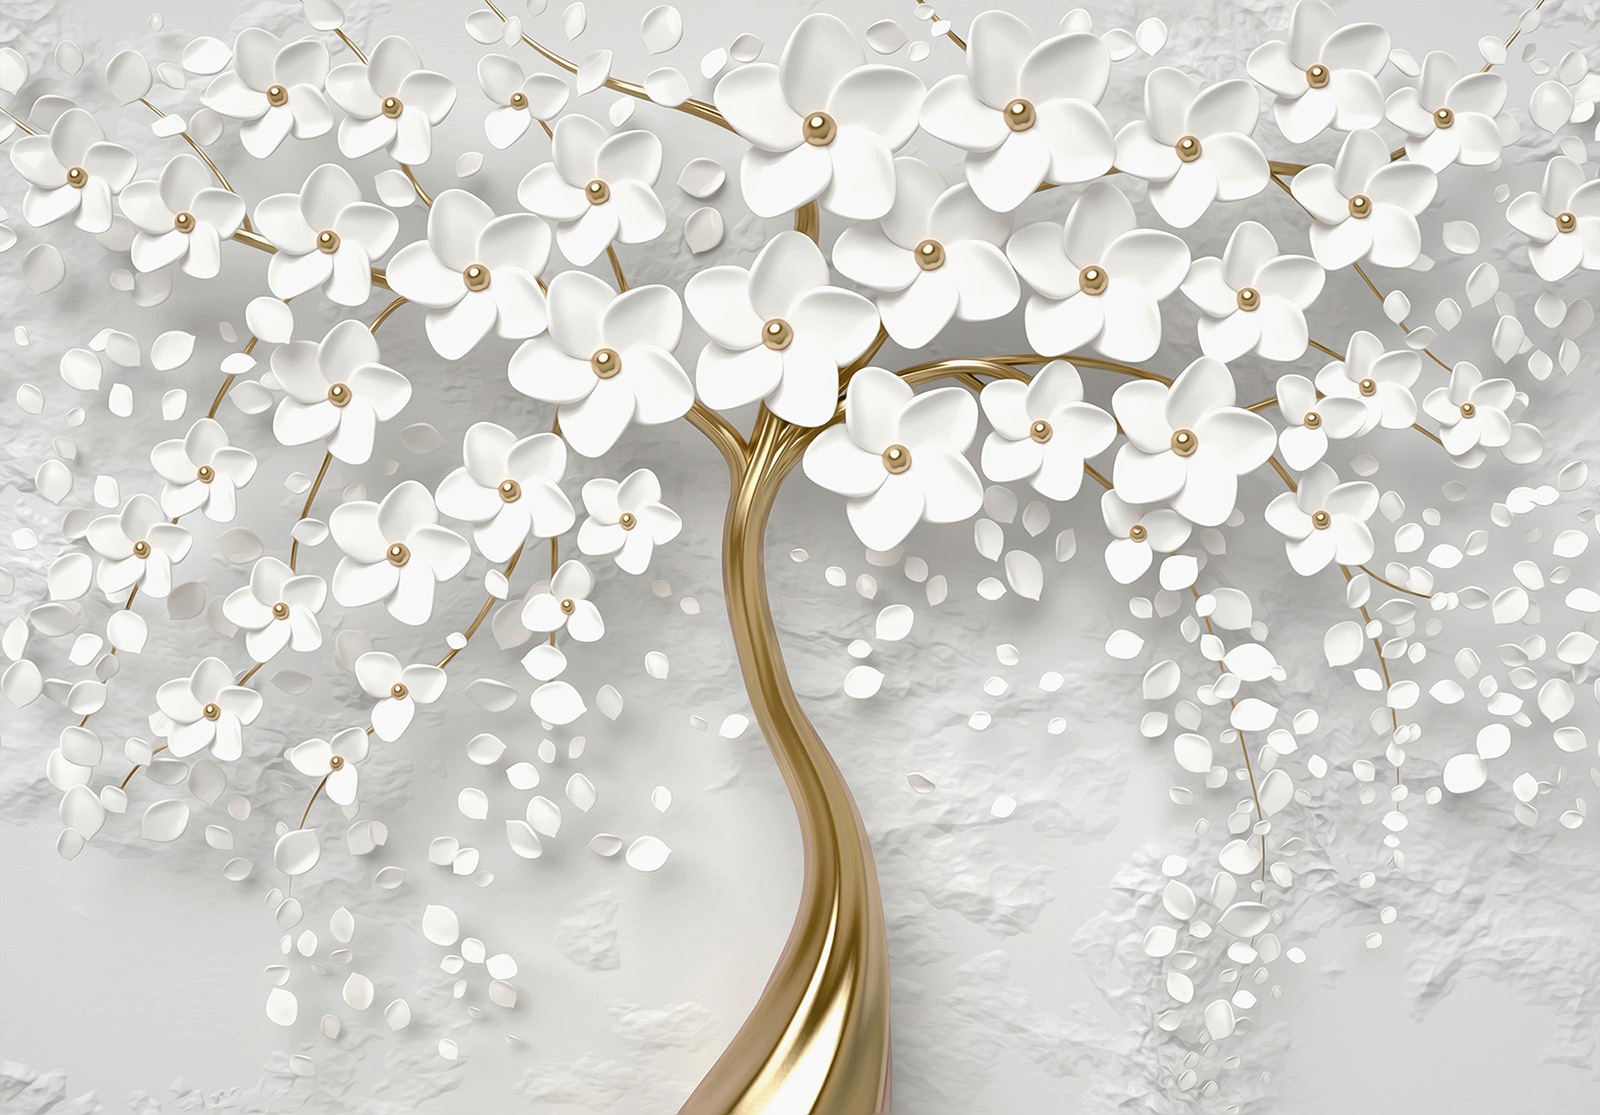 Consalnet Vliestapete »3D Baum mit Blumen«, botanisch, abstrakt, modern,  vliestapete, für Wohnzimmer oder Schlafzimmer auf Rechnung bestellen